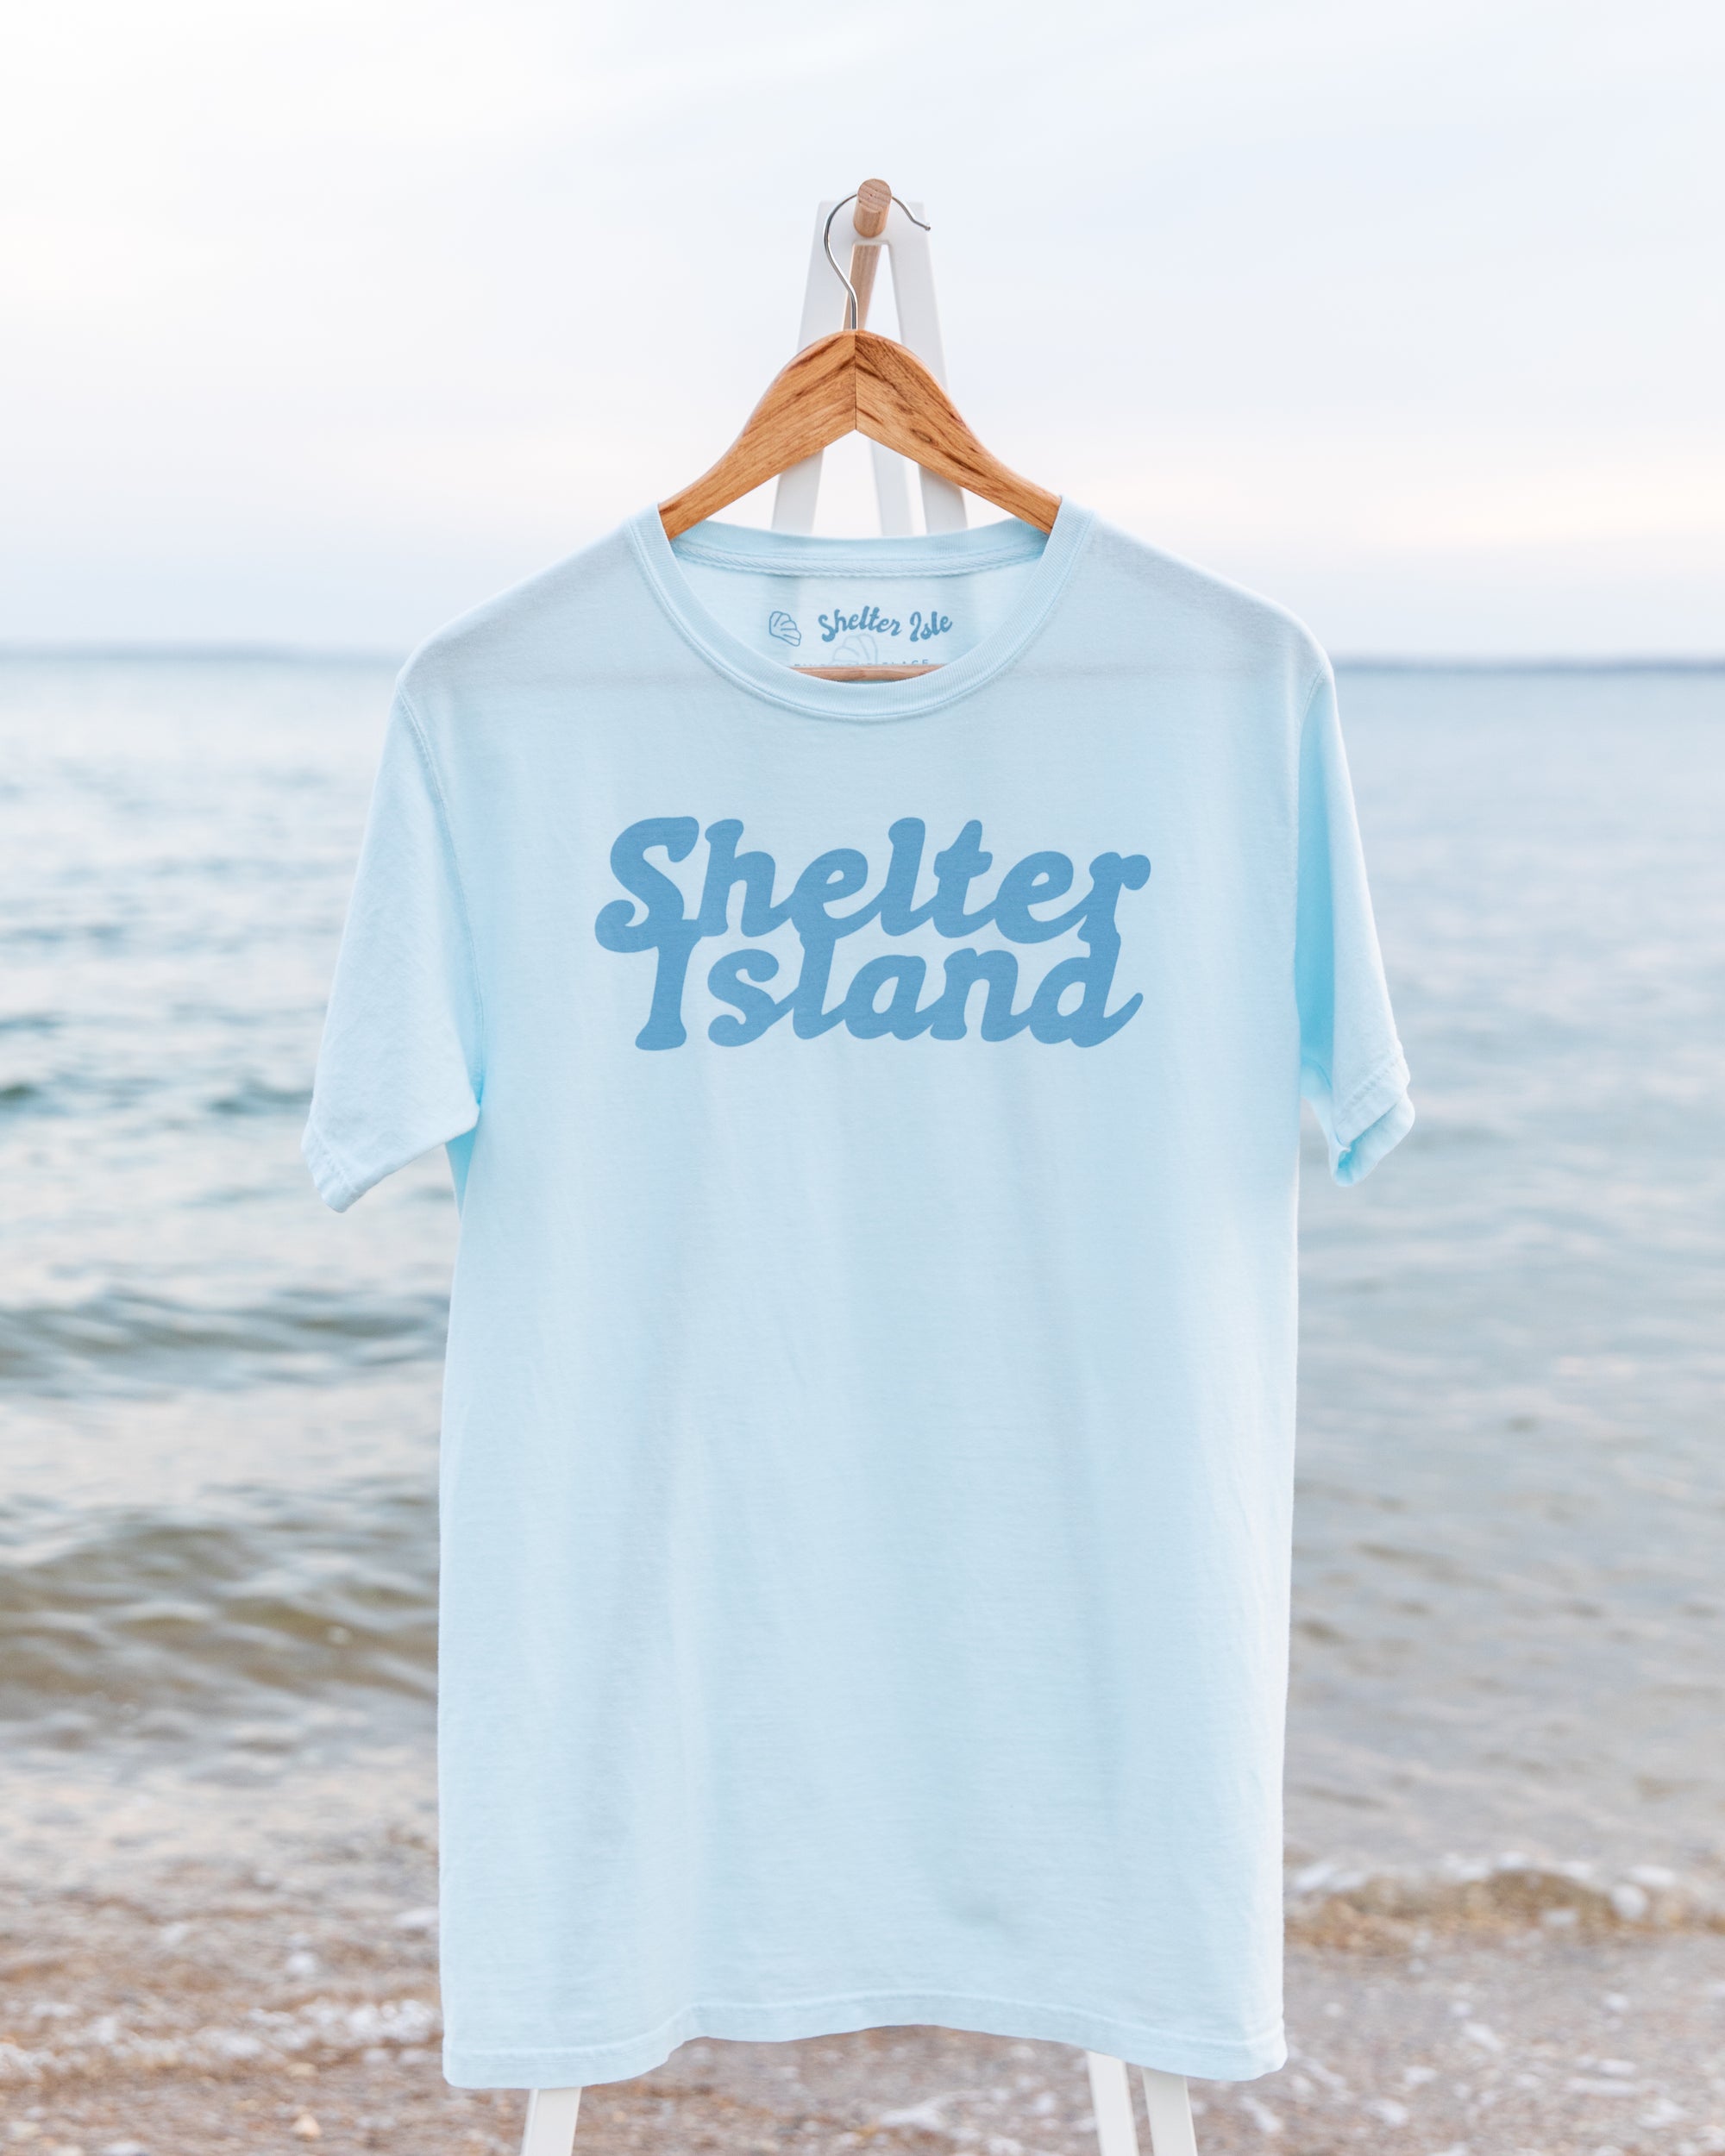 Short Sleeve Blue Sea Retro Shelter Island Tee by Shelter Island Online Clothing Boutique, Shelter Isle